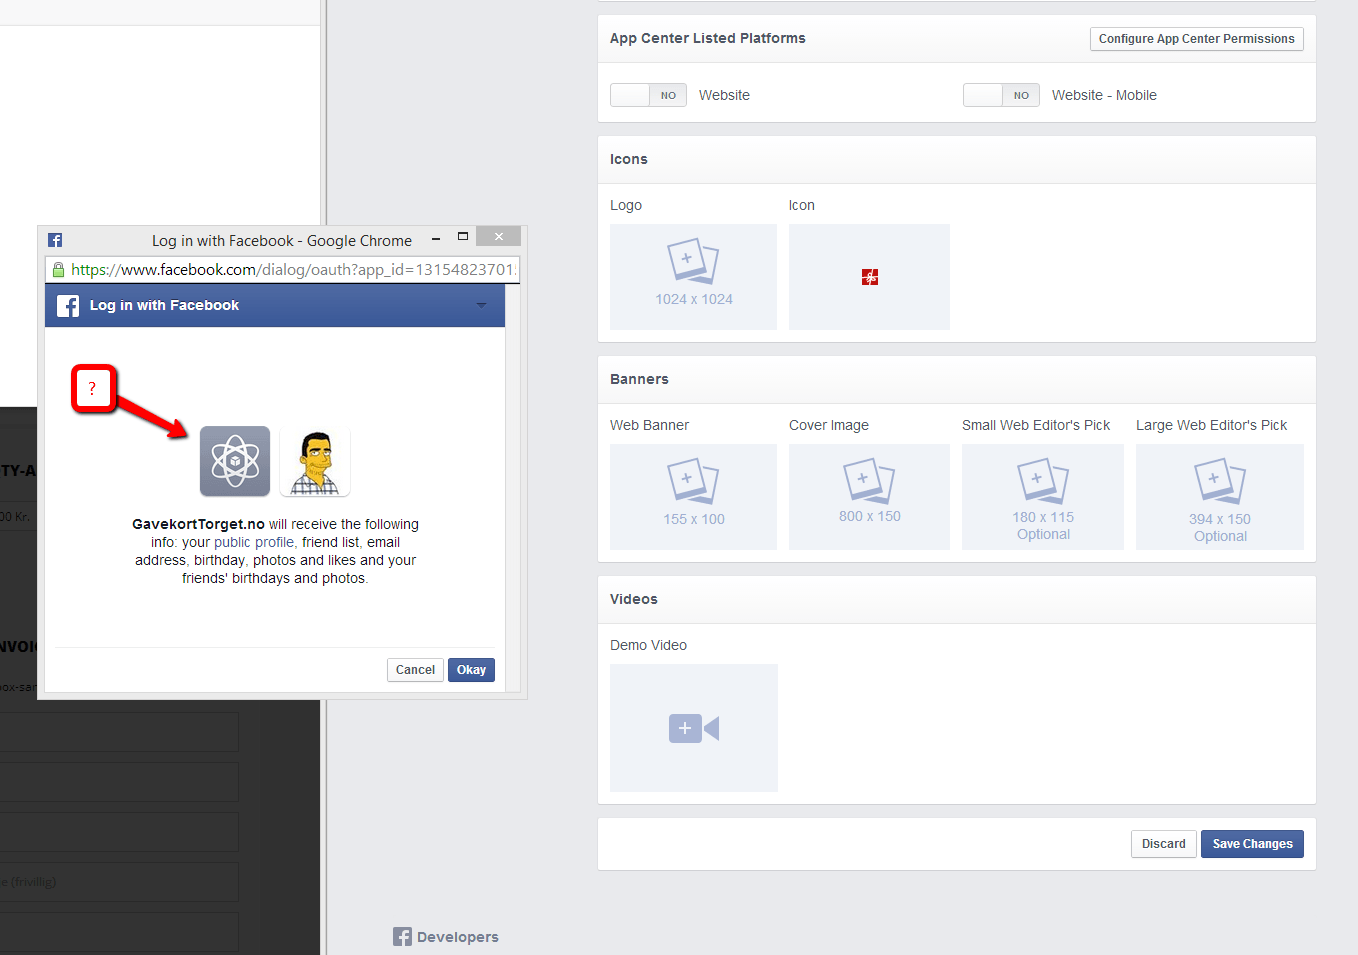 Check in Facebook App Logo - Facebook App Developer Logo is gone? - Web Applications Stack Exchange